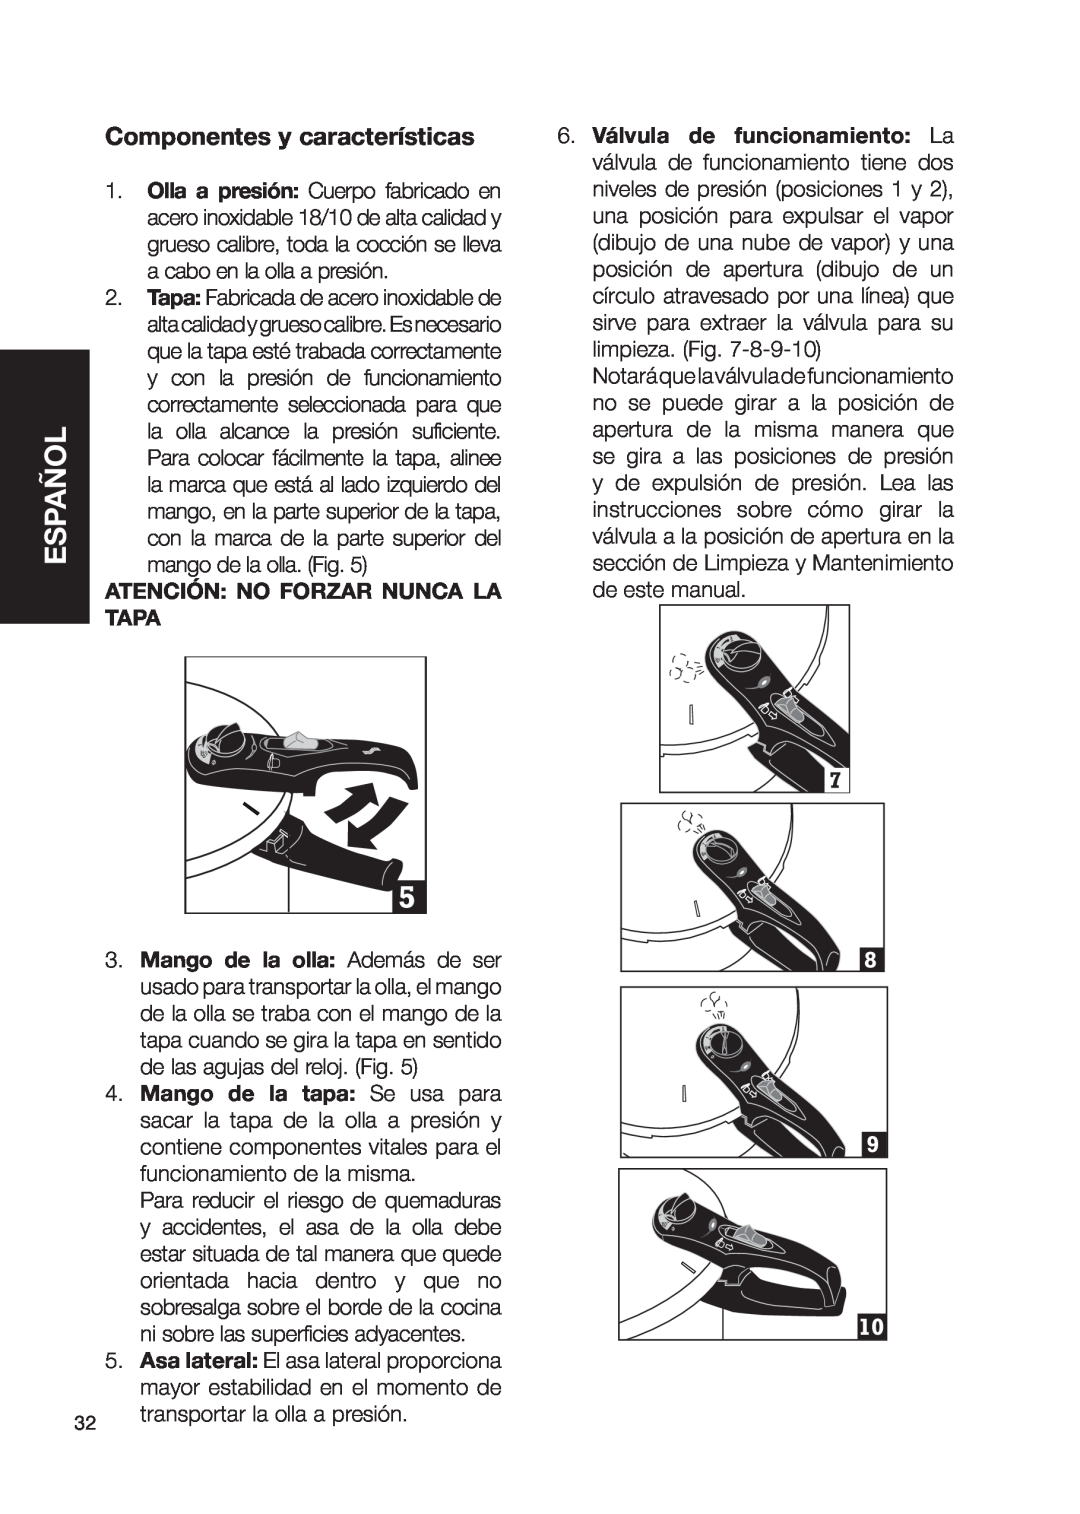 Fagor America fagor duo pressure cooker user manual Componentes y características, Atención: No Forzar Nunca La, Tapa 